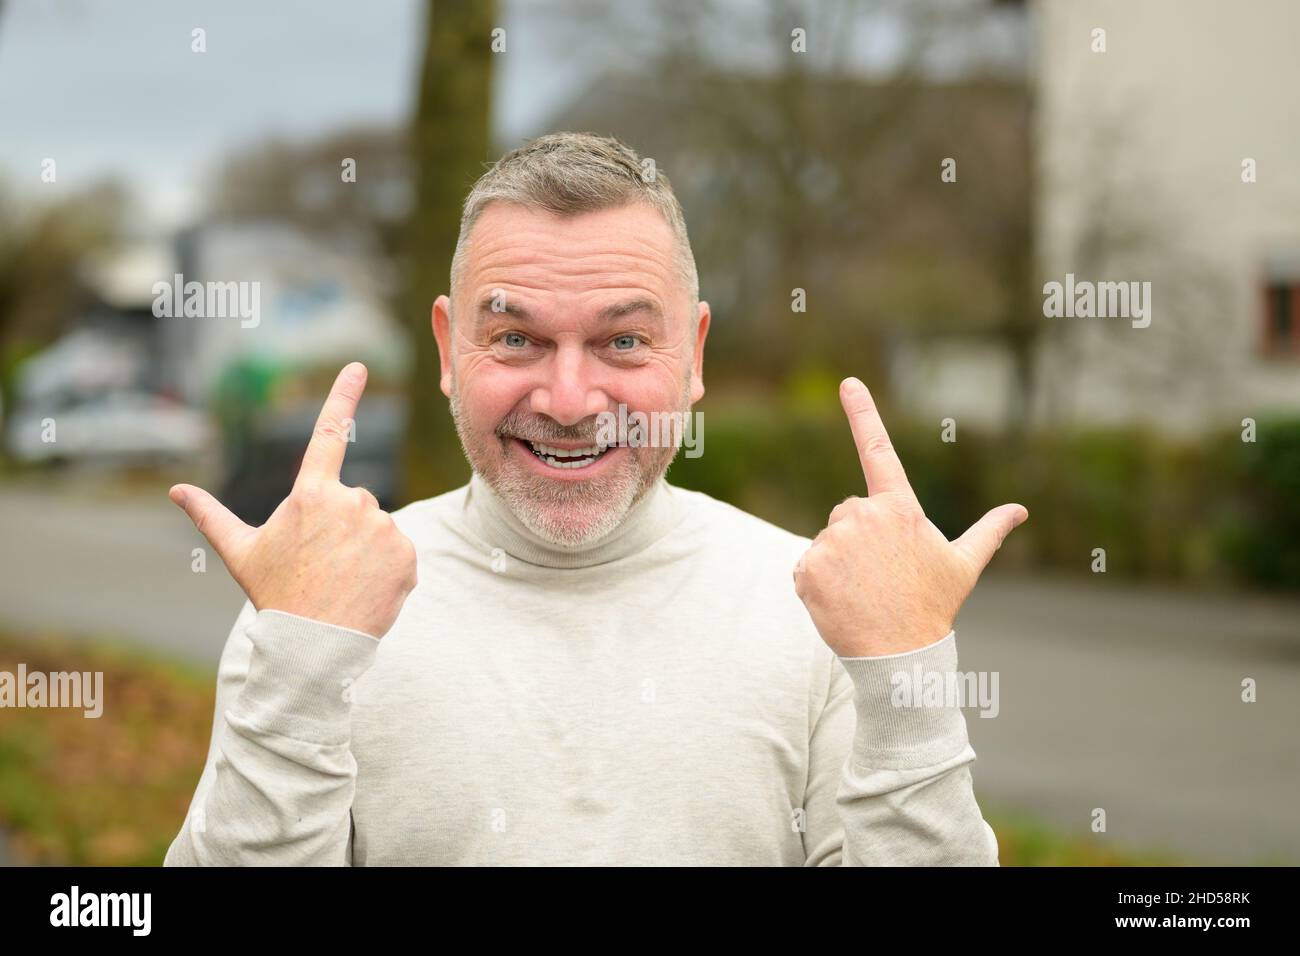 Ein fröhlich-beschwingter Mann grinst die Kamera an, während er mit beiden Händen gestikulierte, um seinen Erfolg auf einer ruhigen Straße in der Stadt im Freien zu zeigen Stockfoto